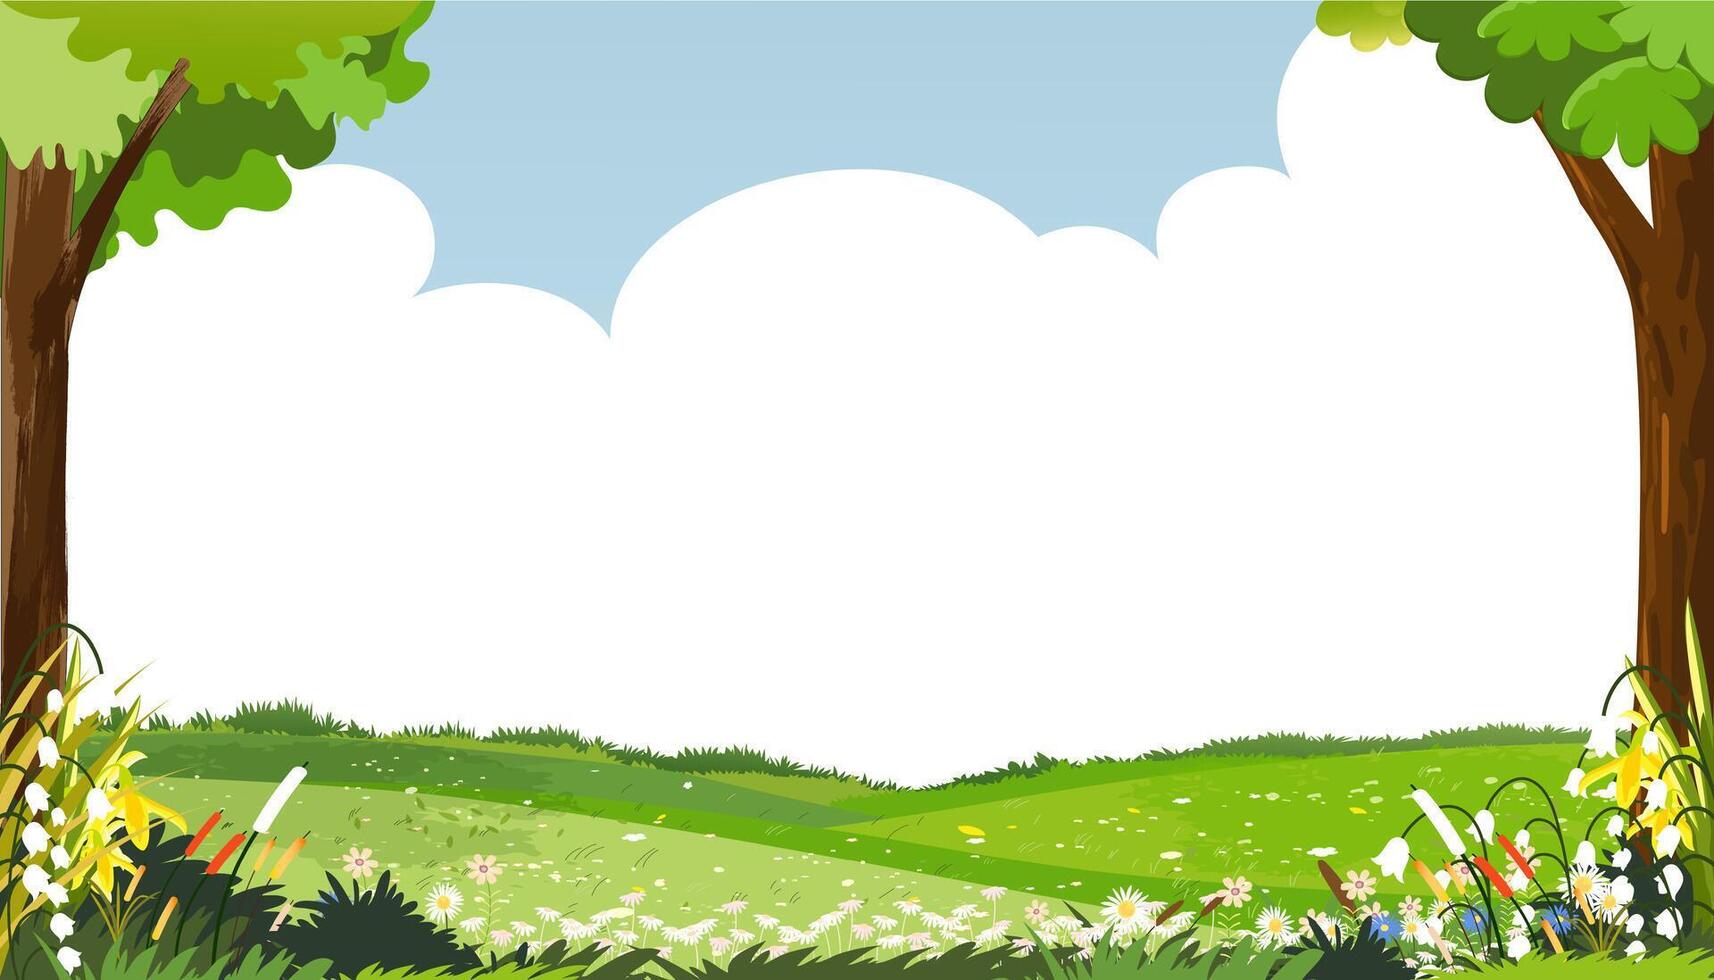 fundo de primavera com paisagem de campo de grama rural, borda de folhas verdes no fundo do céu azul, desenho vetorial bonito para a páscoa com espaço de cópia céu e nuvem, banner de pano de fundo para olá primavera, verão vetor